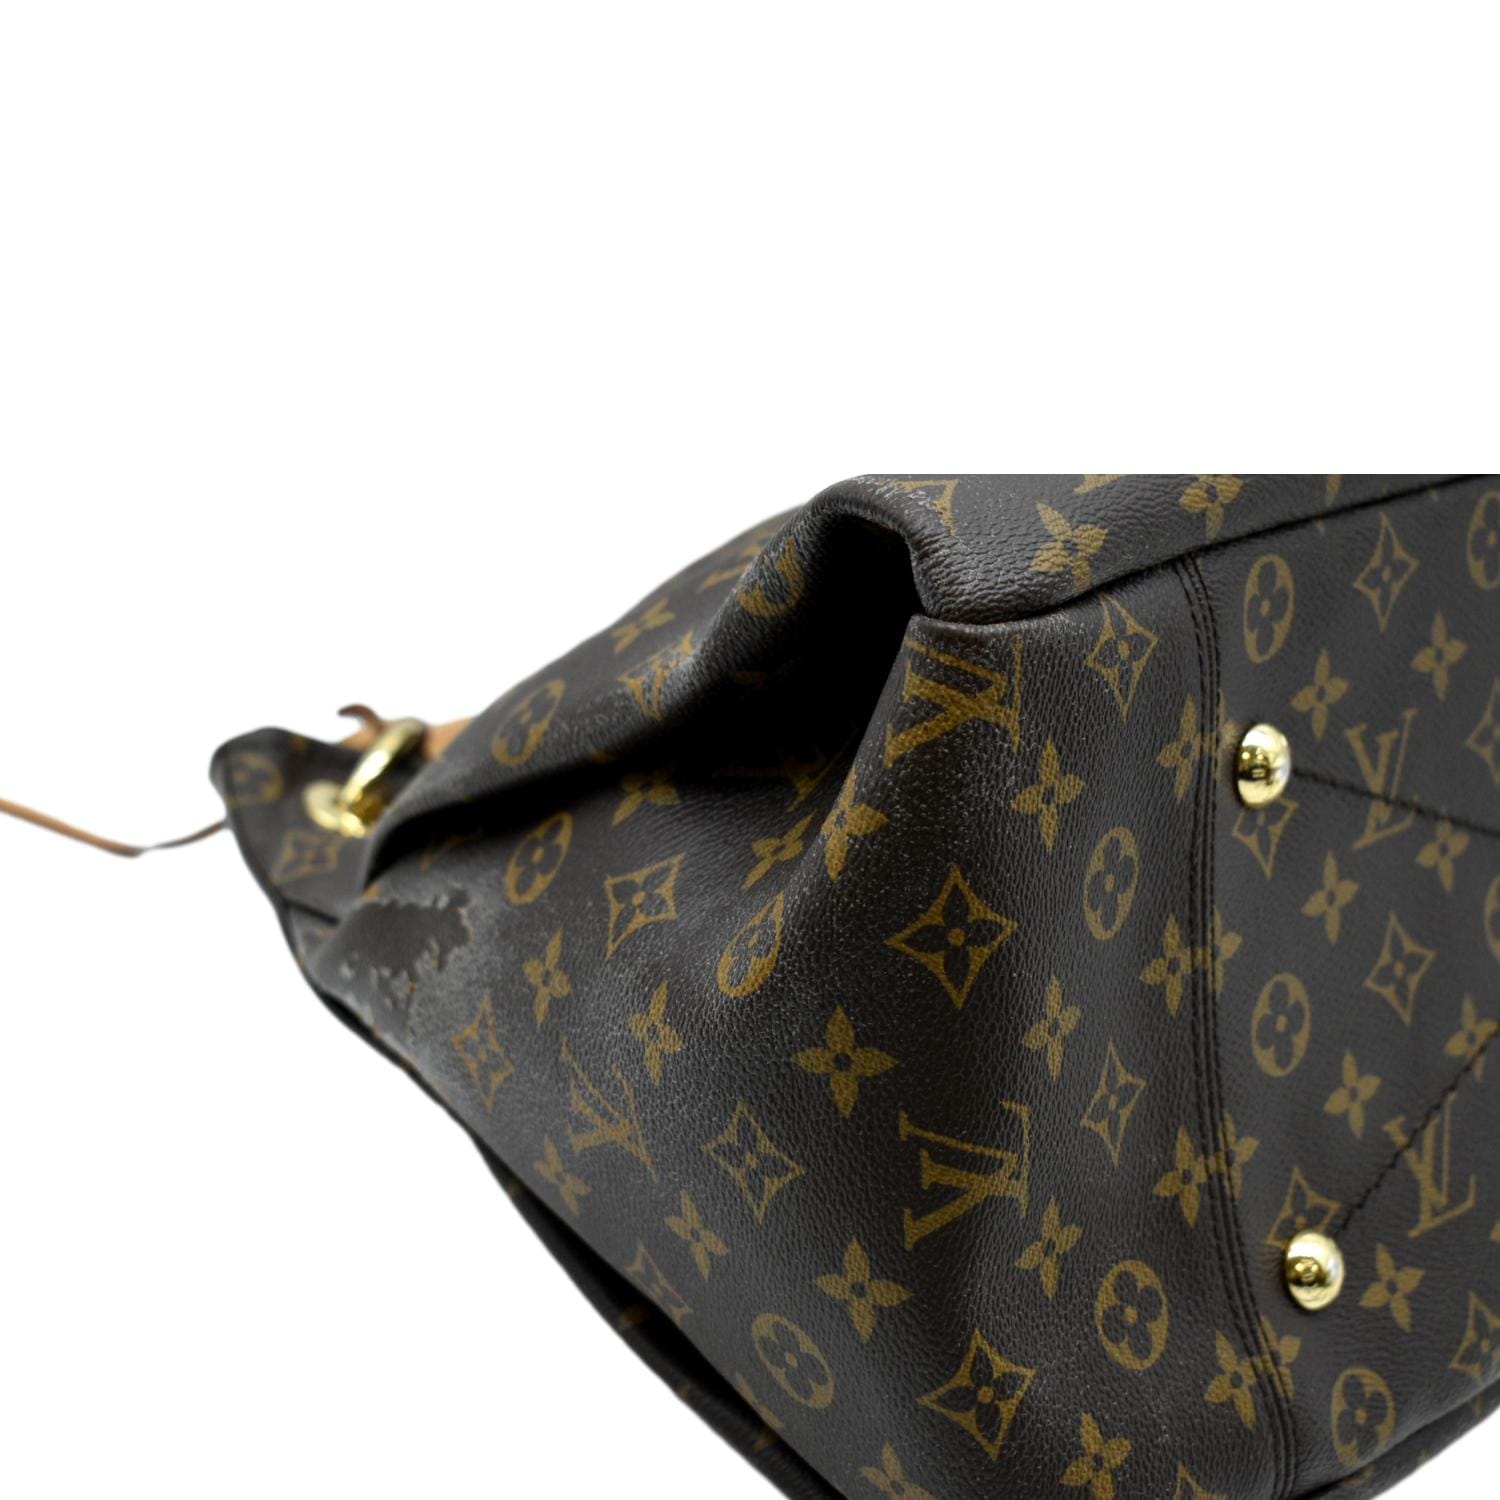 Louis Vuitton Monogram Artsy mm Hobo Bag Braided Handle 1025lv21